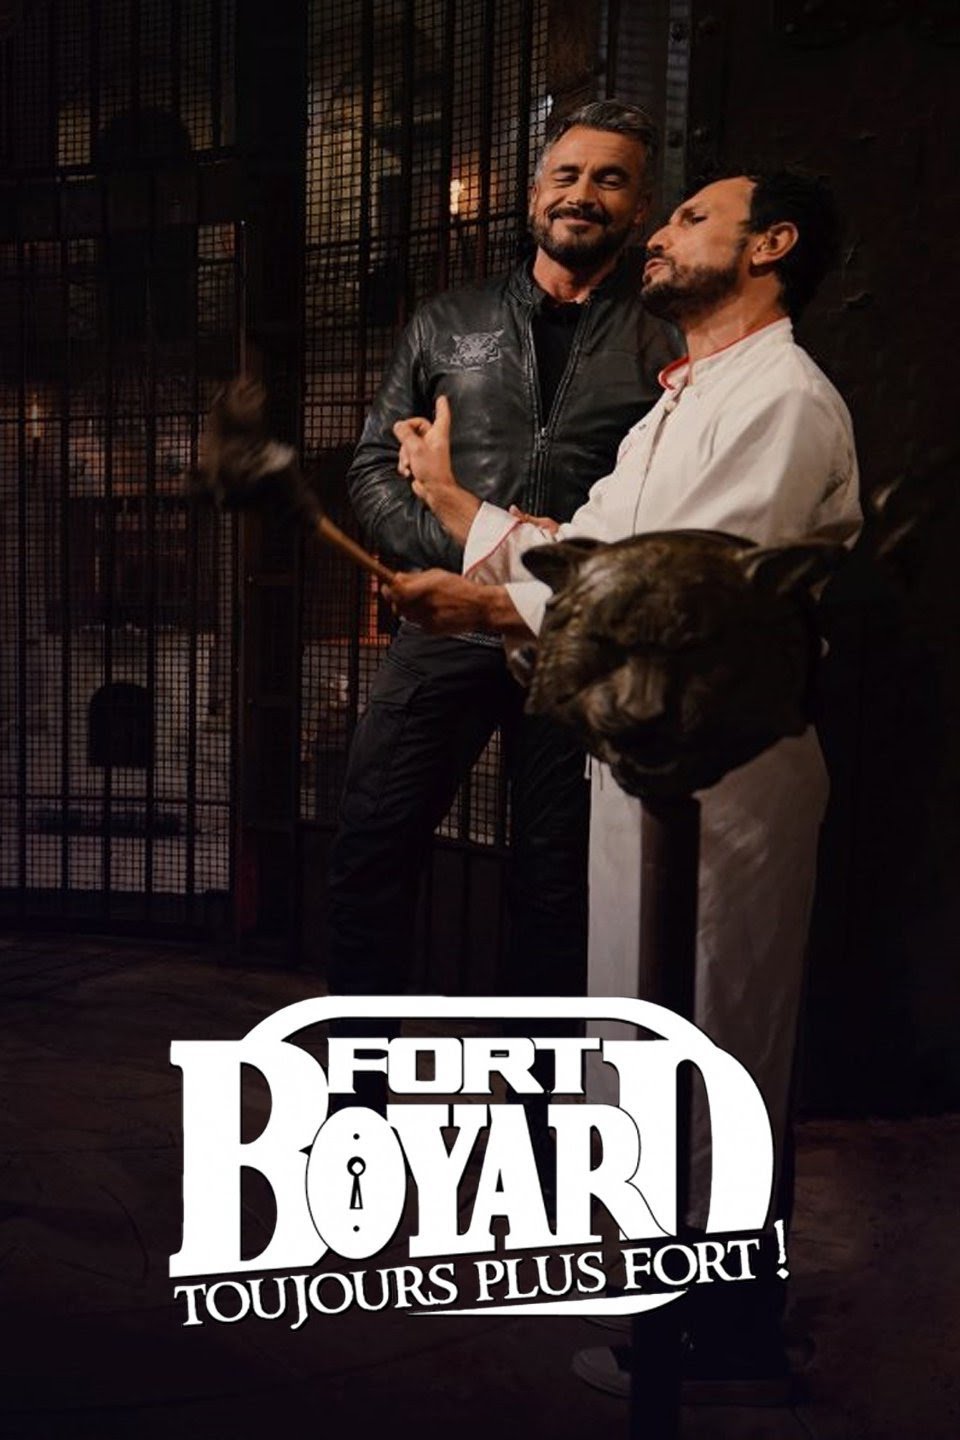 Fort Boyard: toujours plus fort!